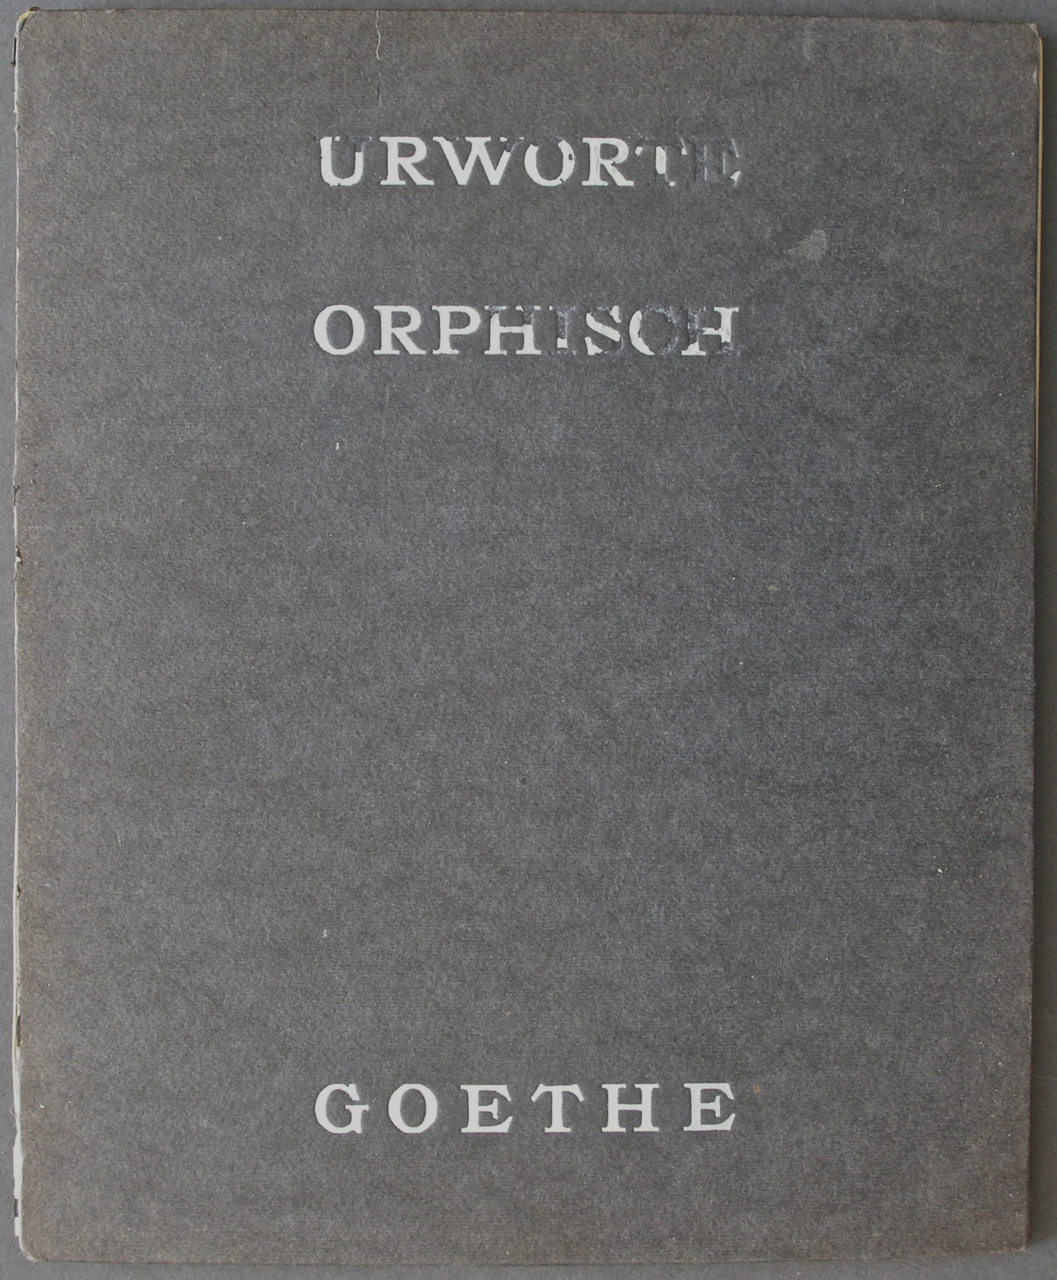 KARL THYLMANN, Five Woodcuts to Goethe's Urworte Orphisch 1912